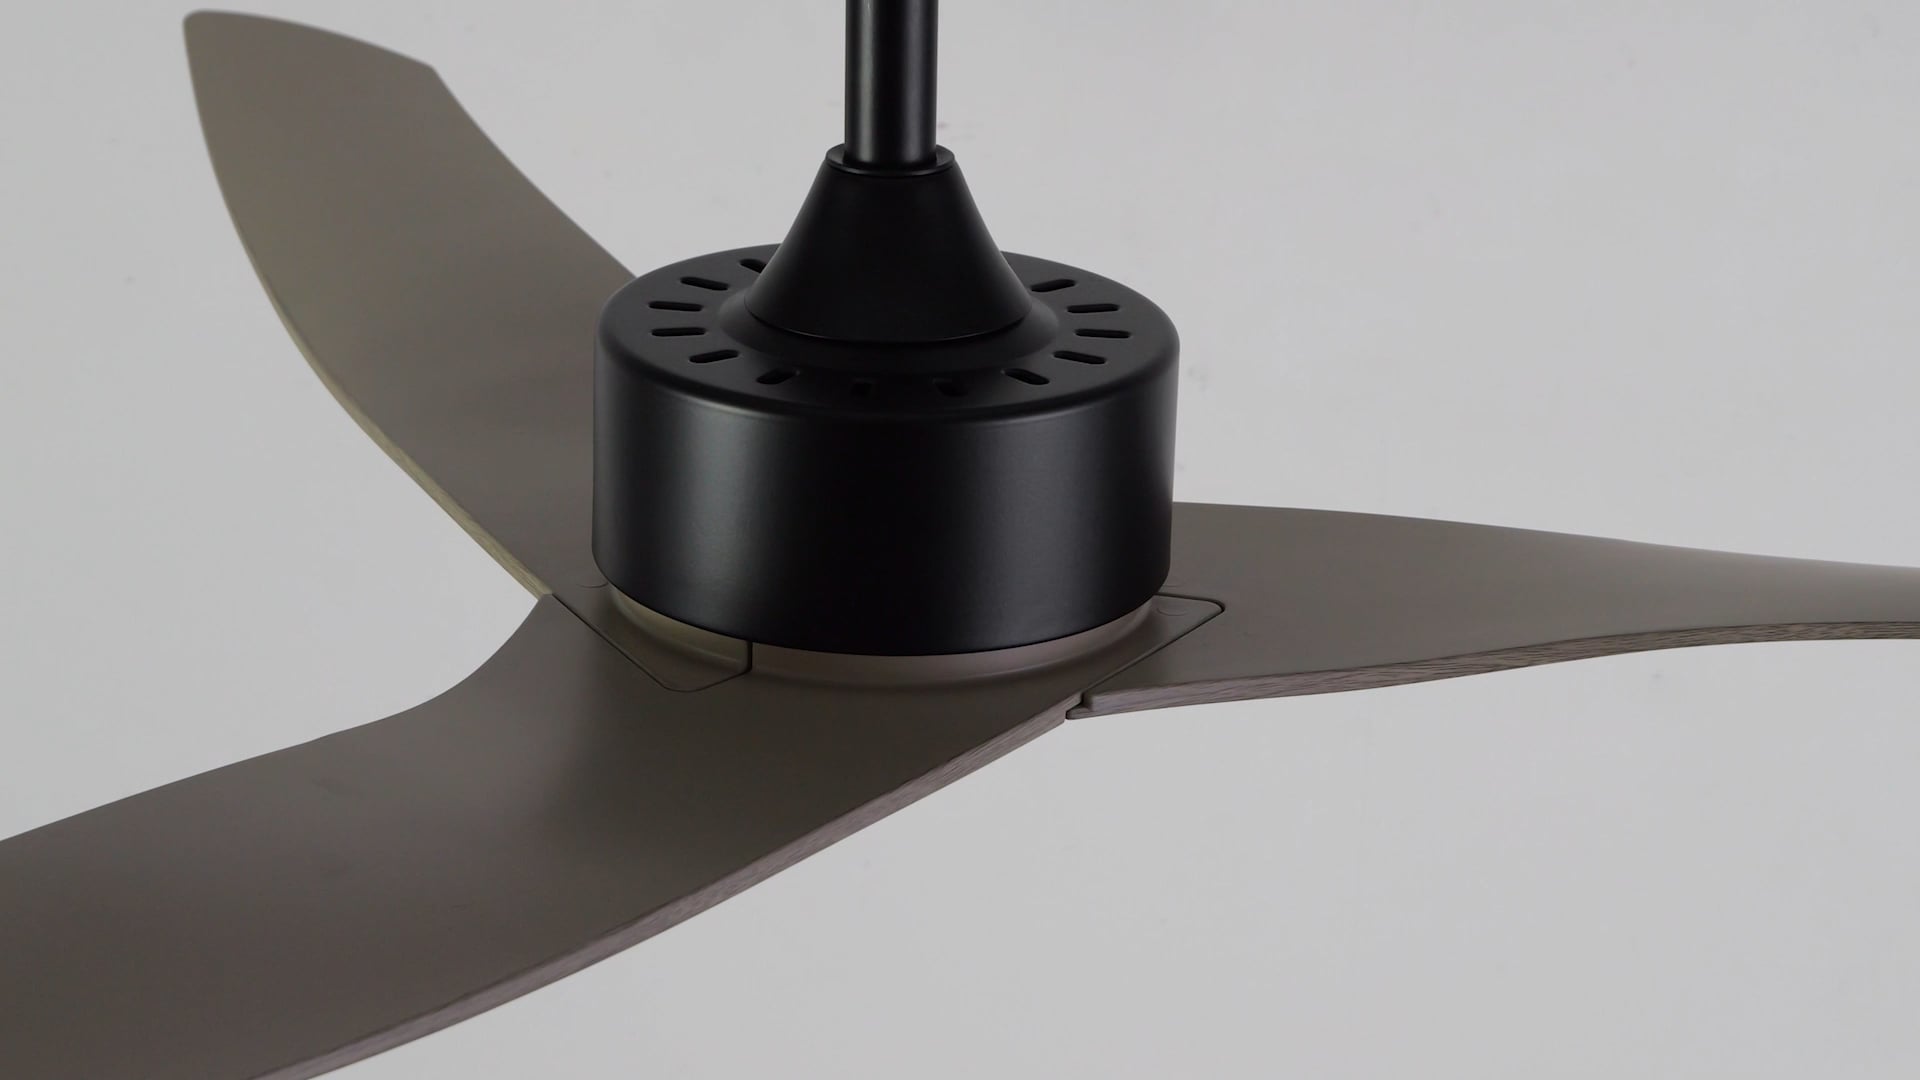 Aldrin 50" Modern Iron/Plastic App6-Speed Razor Ceiling Fan, Gray Wood